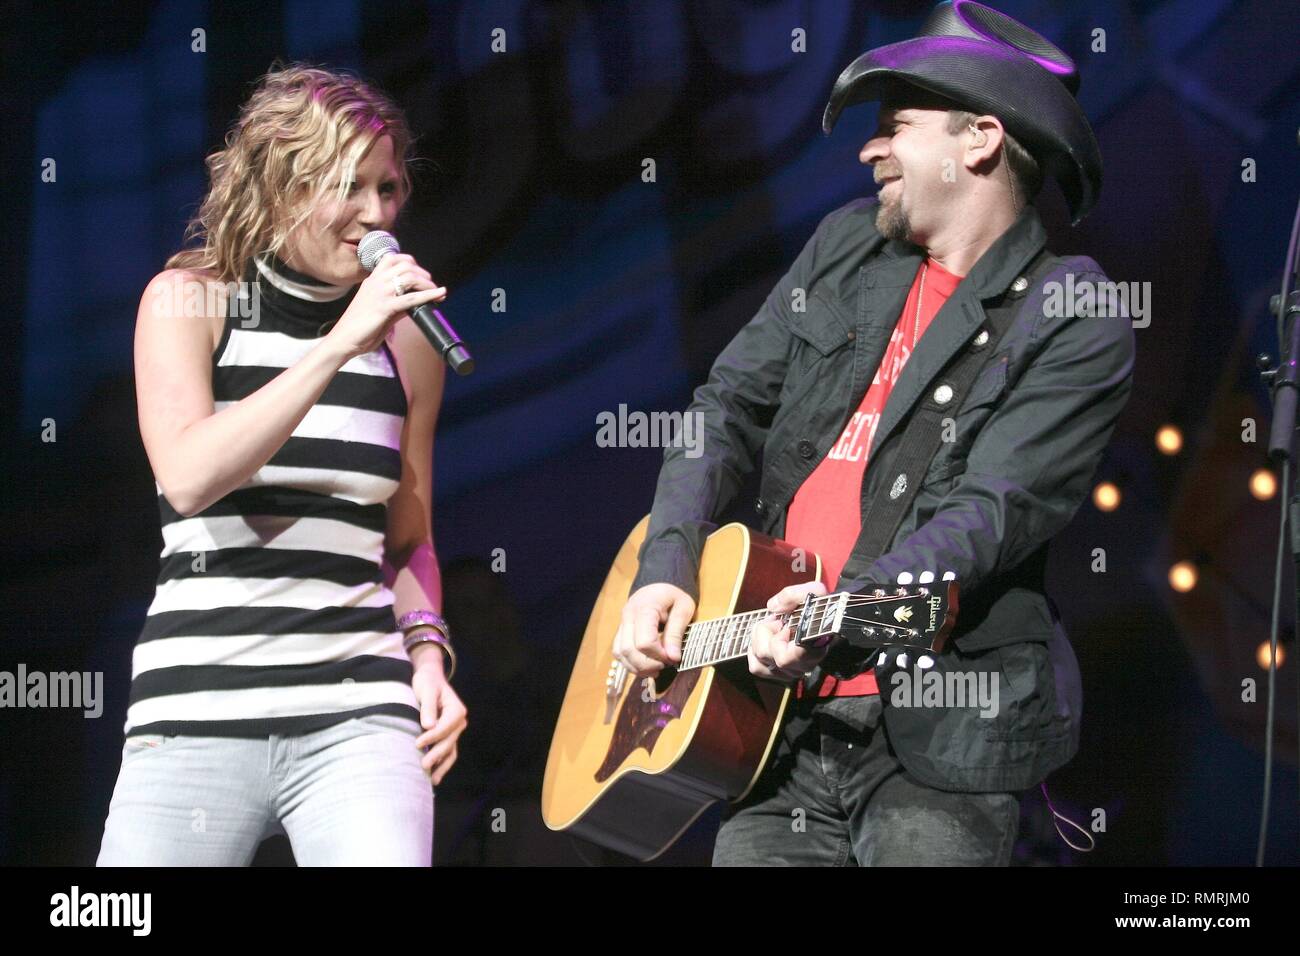 Sänger Jennifer Nettless und Gitarrist & Sänger Kristian Bush der Country Band Sugarland dargestellt auf der Bühne während einer "live"-Konzert aussehen. Stockfoto